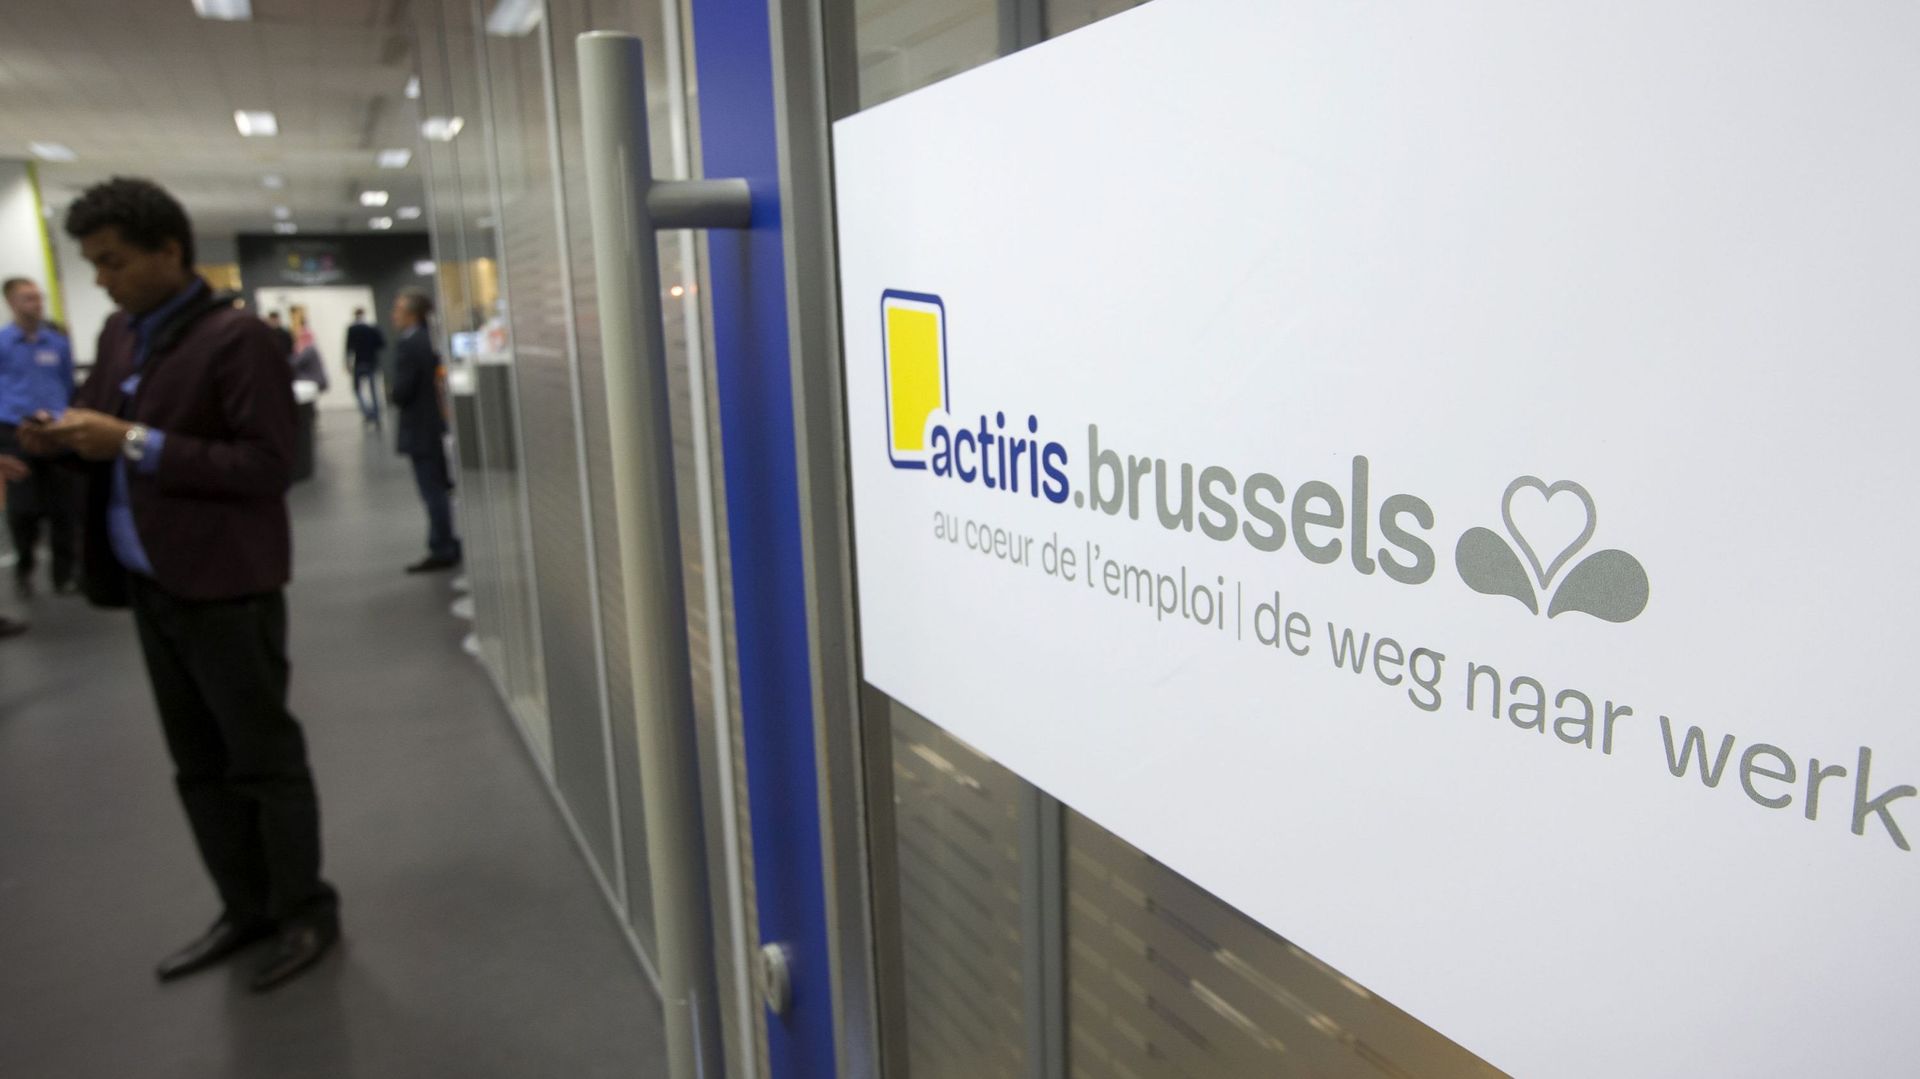 Le nombre de jeunes demandeurs d’emploi en hausse de 10% à Bruxelles